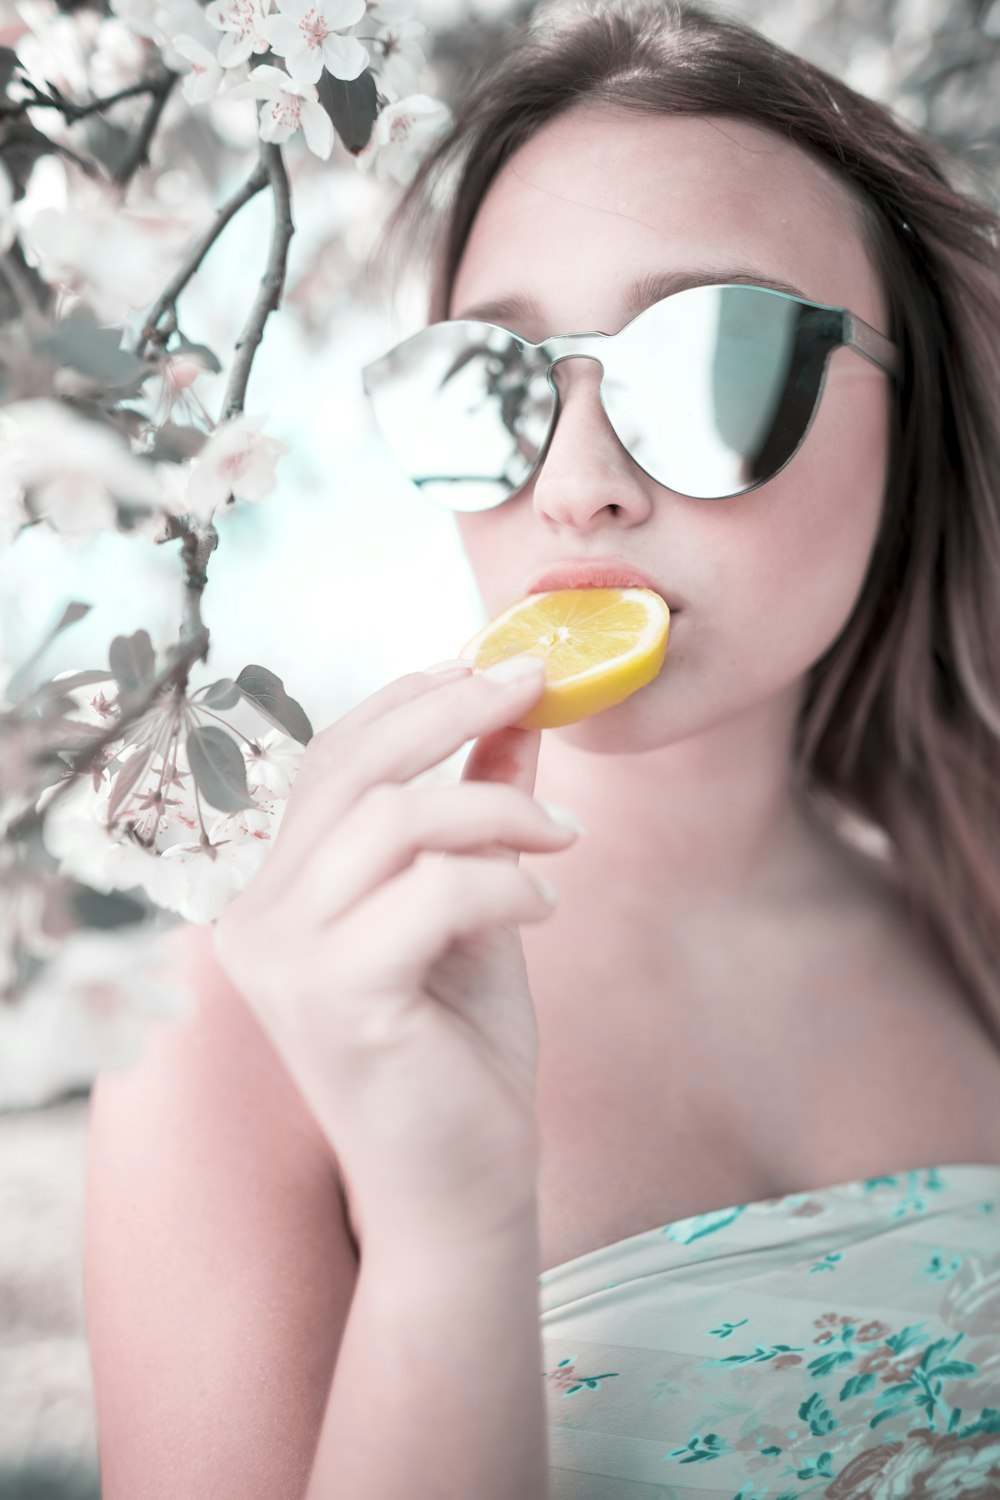 donna che mangia frutta arancione a fette